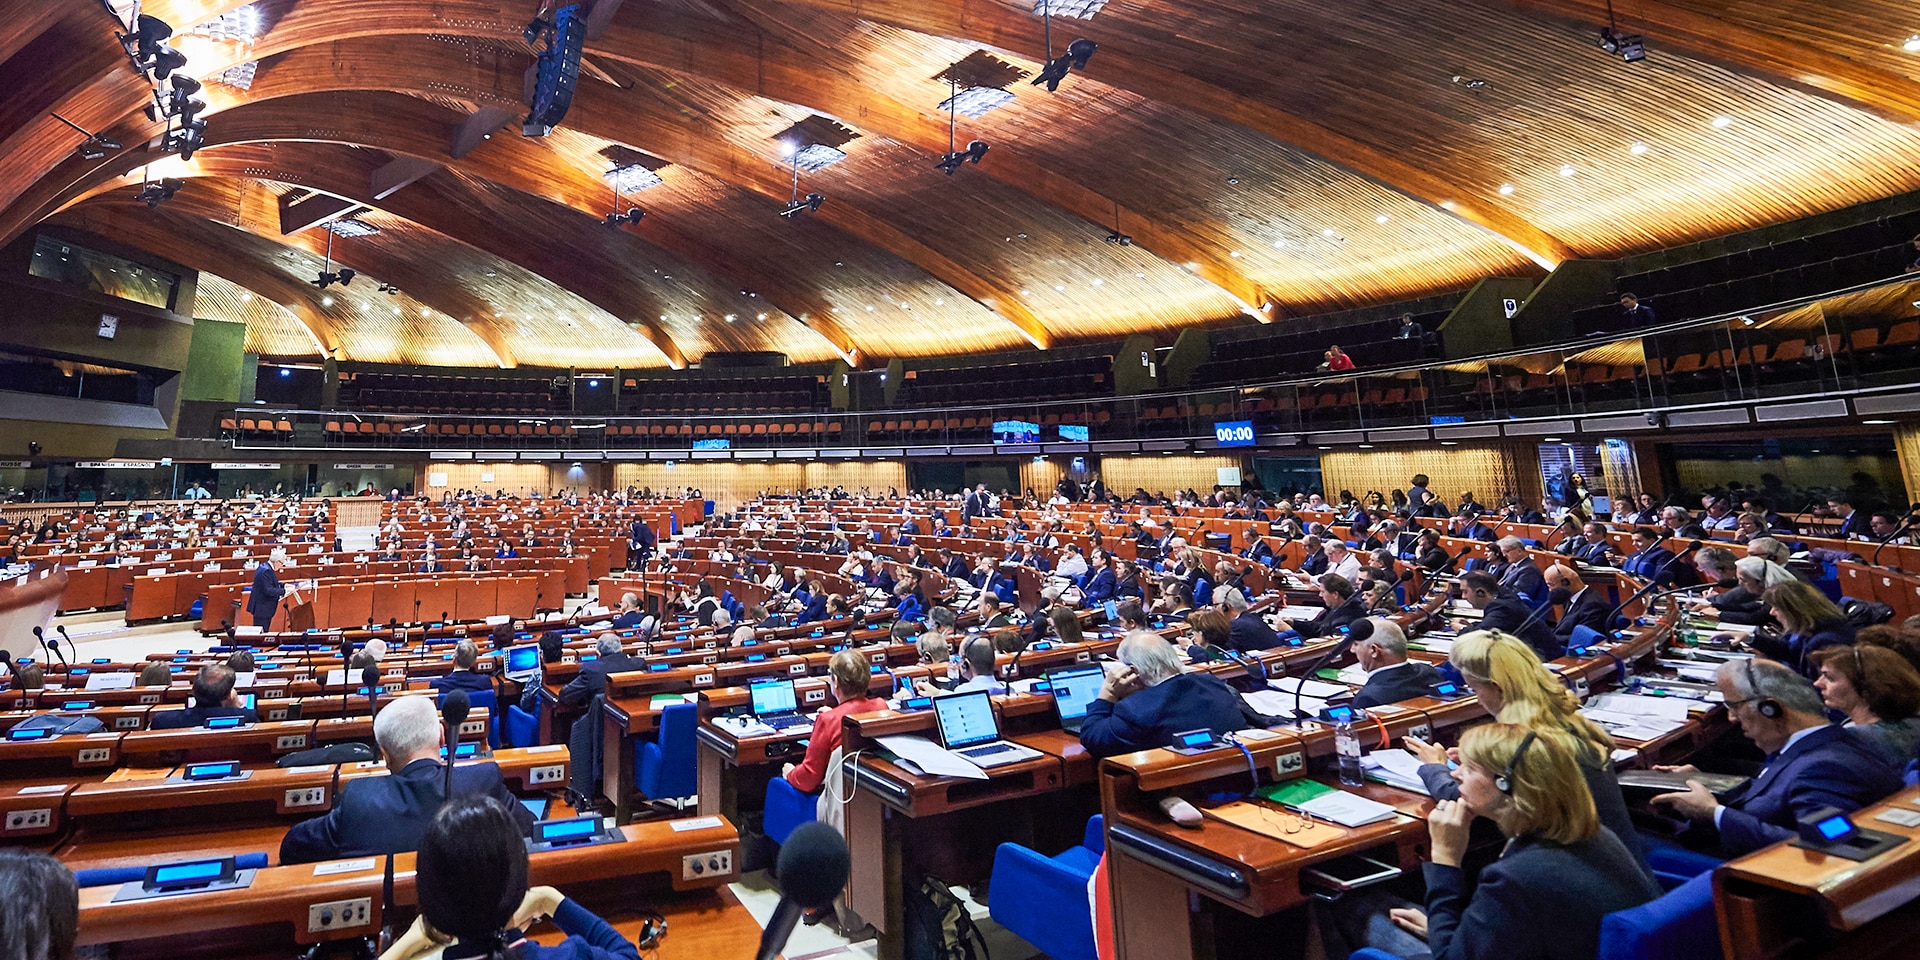 Une grande salle avec une structure de toit en bois et des rangées de sièges en demi-cercle, où siègent les membres de l'Assemblée parlementaire du Conseil de l'Europe.